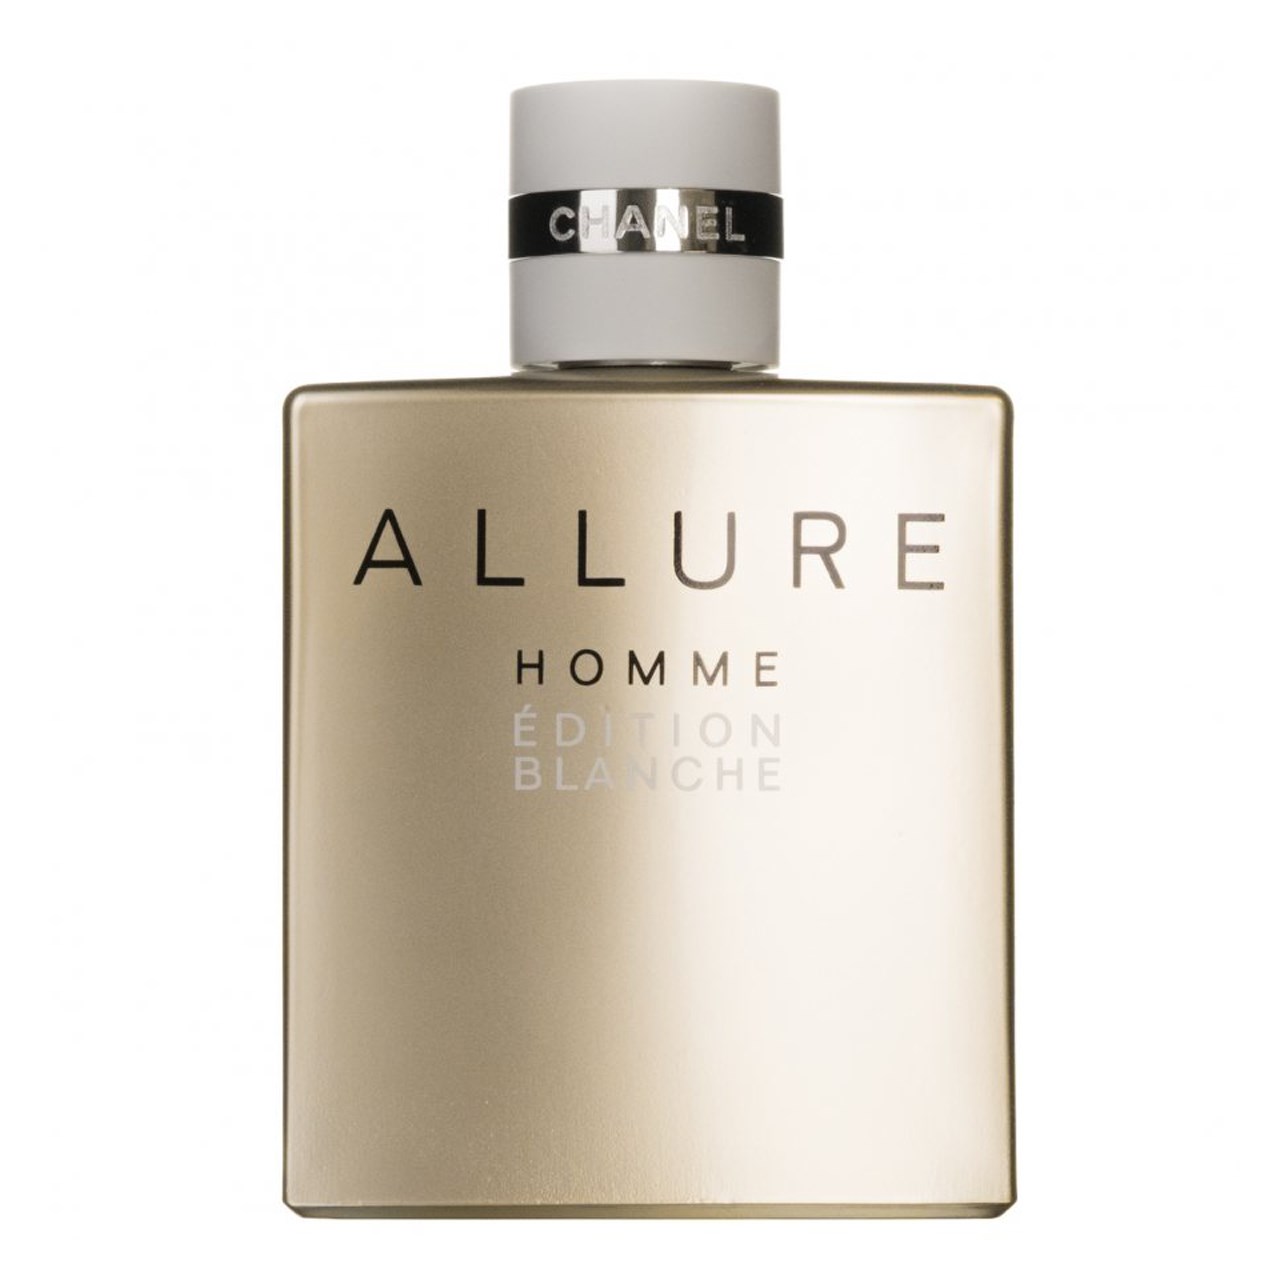 ادوپرفیوم مردانه شانل مدل Allure Homme Edition balache حجم 100 میلی لیتر